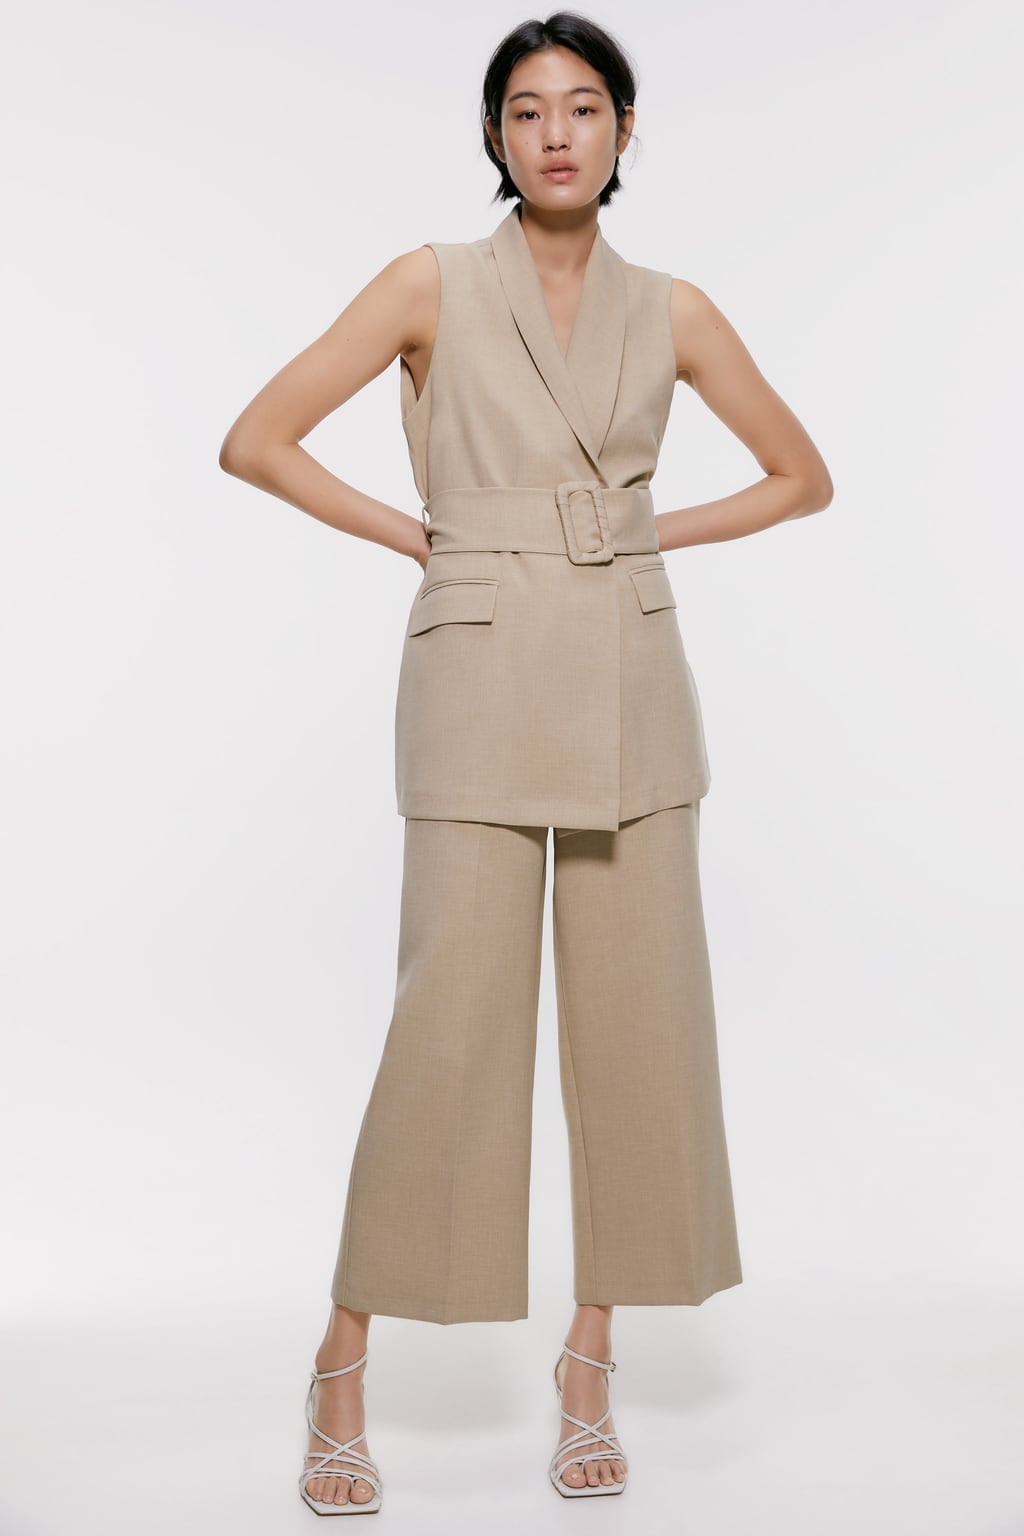 Zara Co-Ord Set | 22 Zara Pieces That 